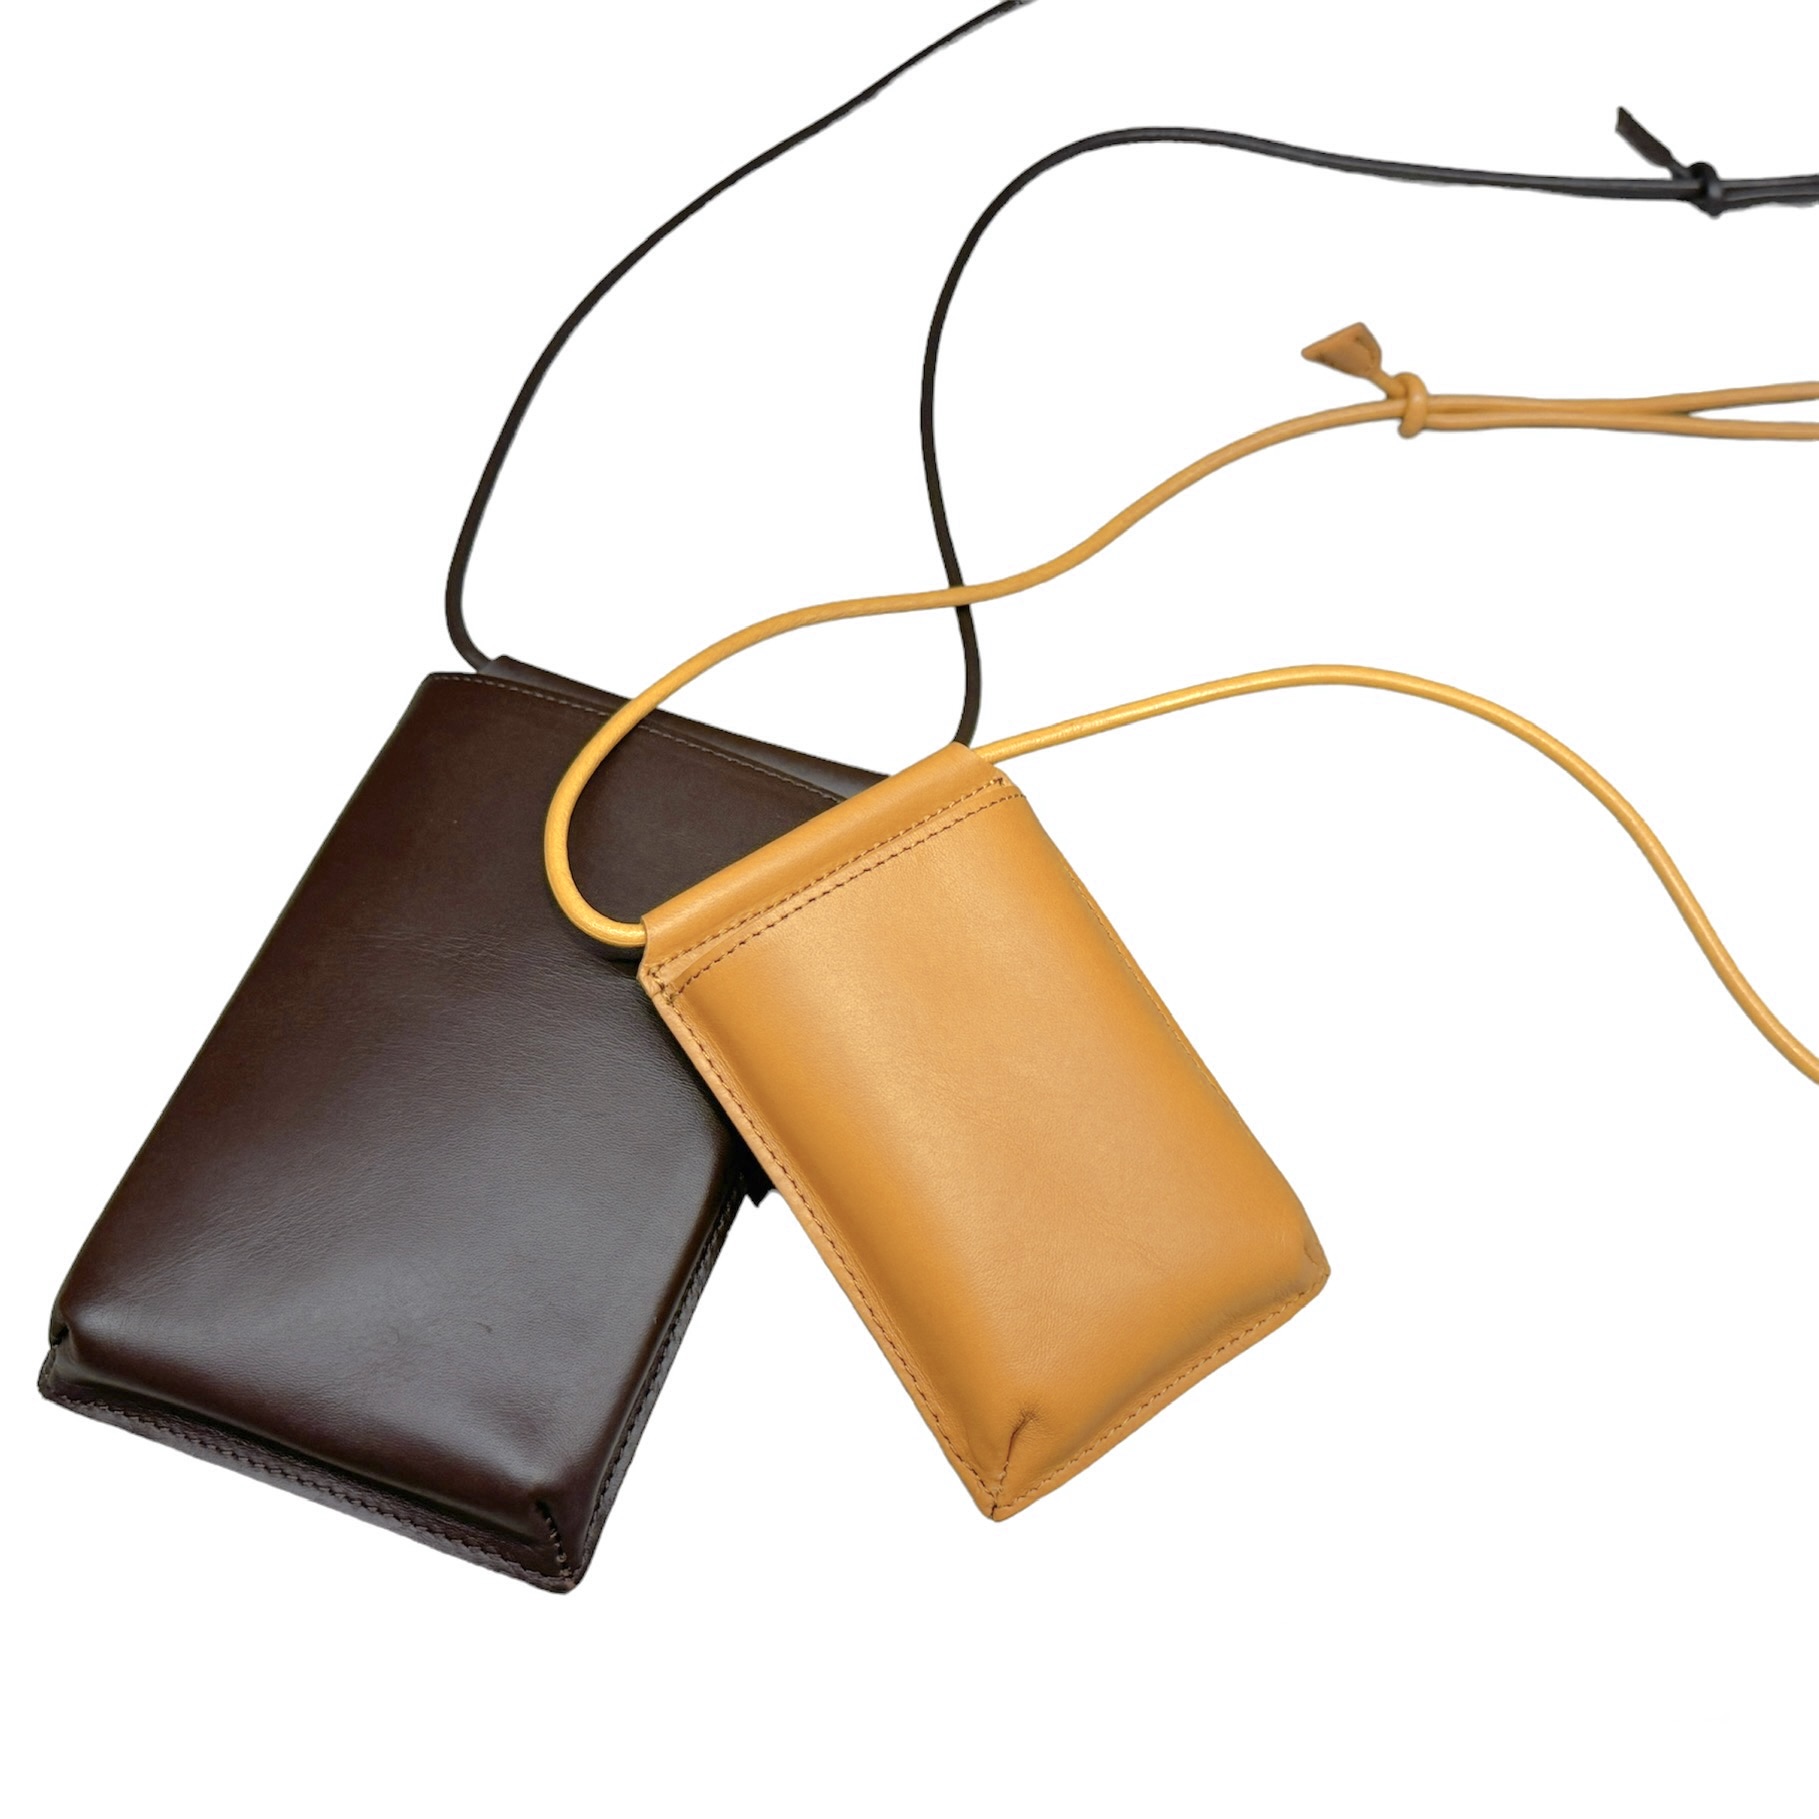 コインケース | SLOW – スロウ 公式ECサイト | 革製のバッグ、財布 等 